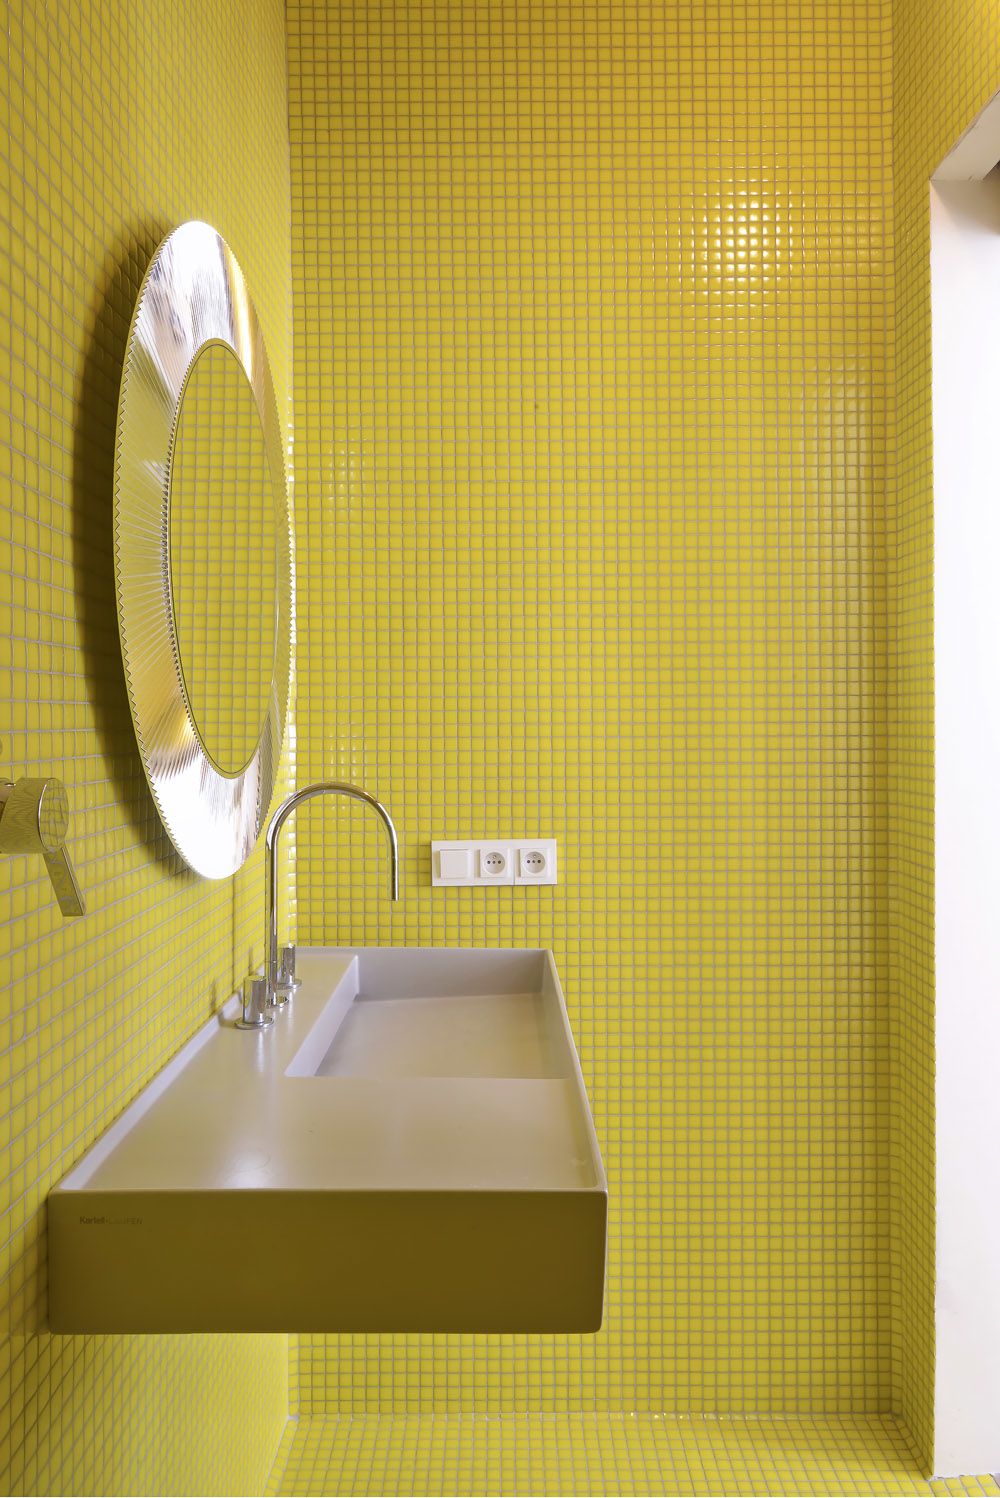 Drobná mozaika ve žluté barvě prostor opticky zvětšuje.